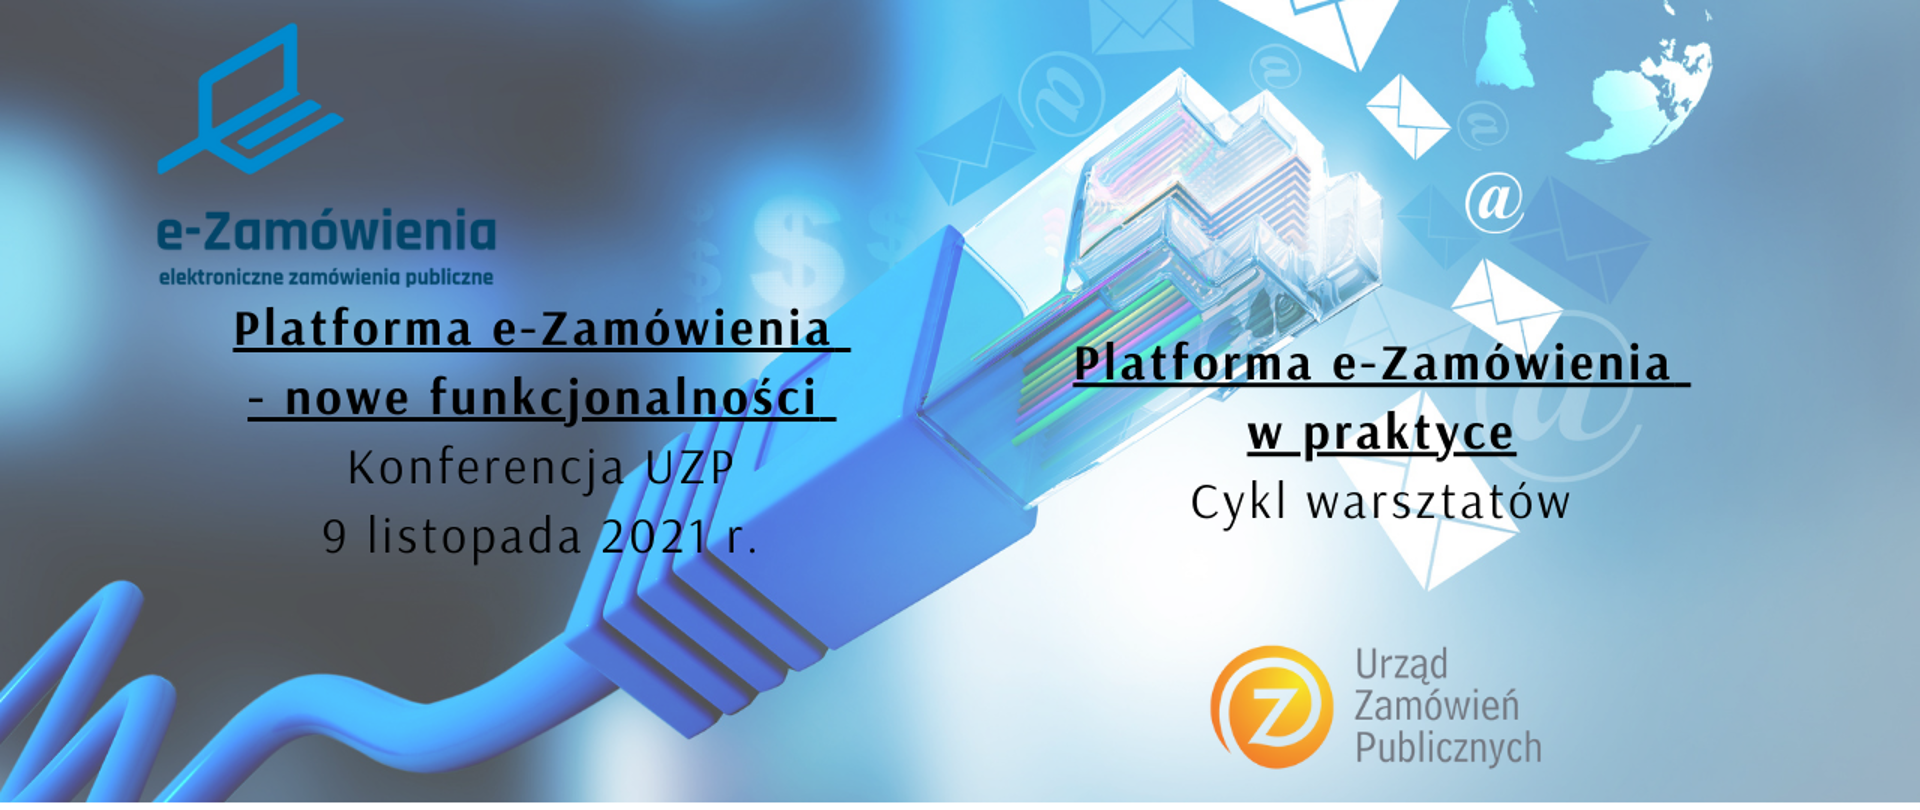 Platforma e-Zamówienia nowe funkcjonalności – konferencja dla Zamawiających zdjęcie kabla z ikonami kopert, na dole logotyp Fundusze Europejskie Polska Cyfrowa, flaga Rzeczypospolitej Polskiej